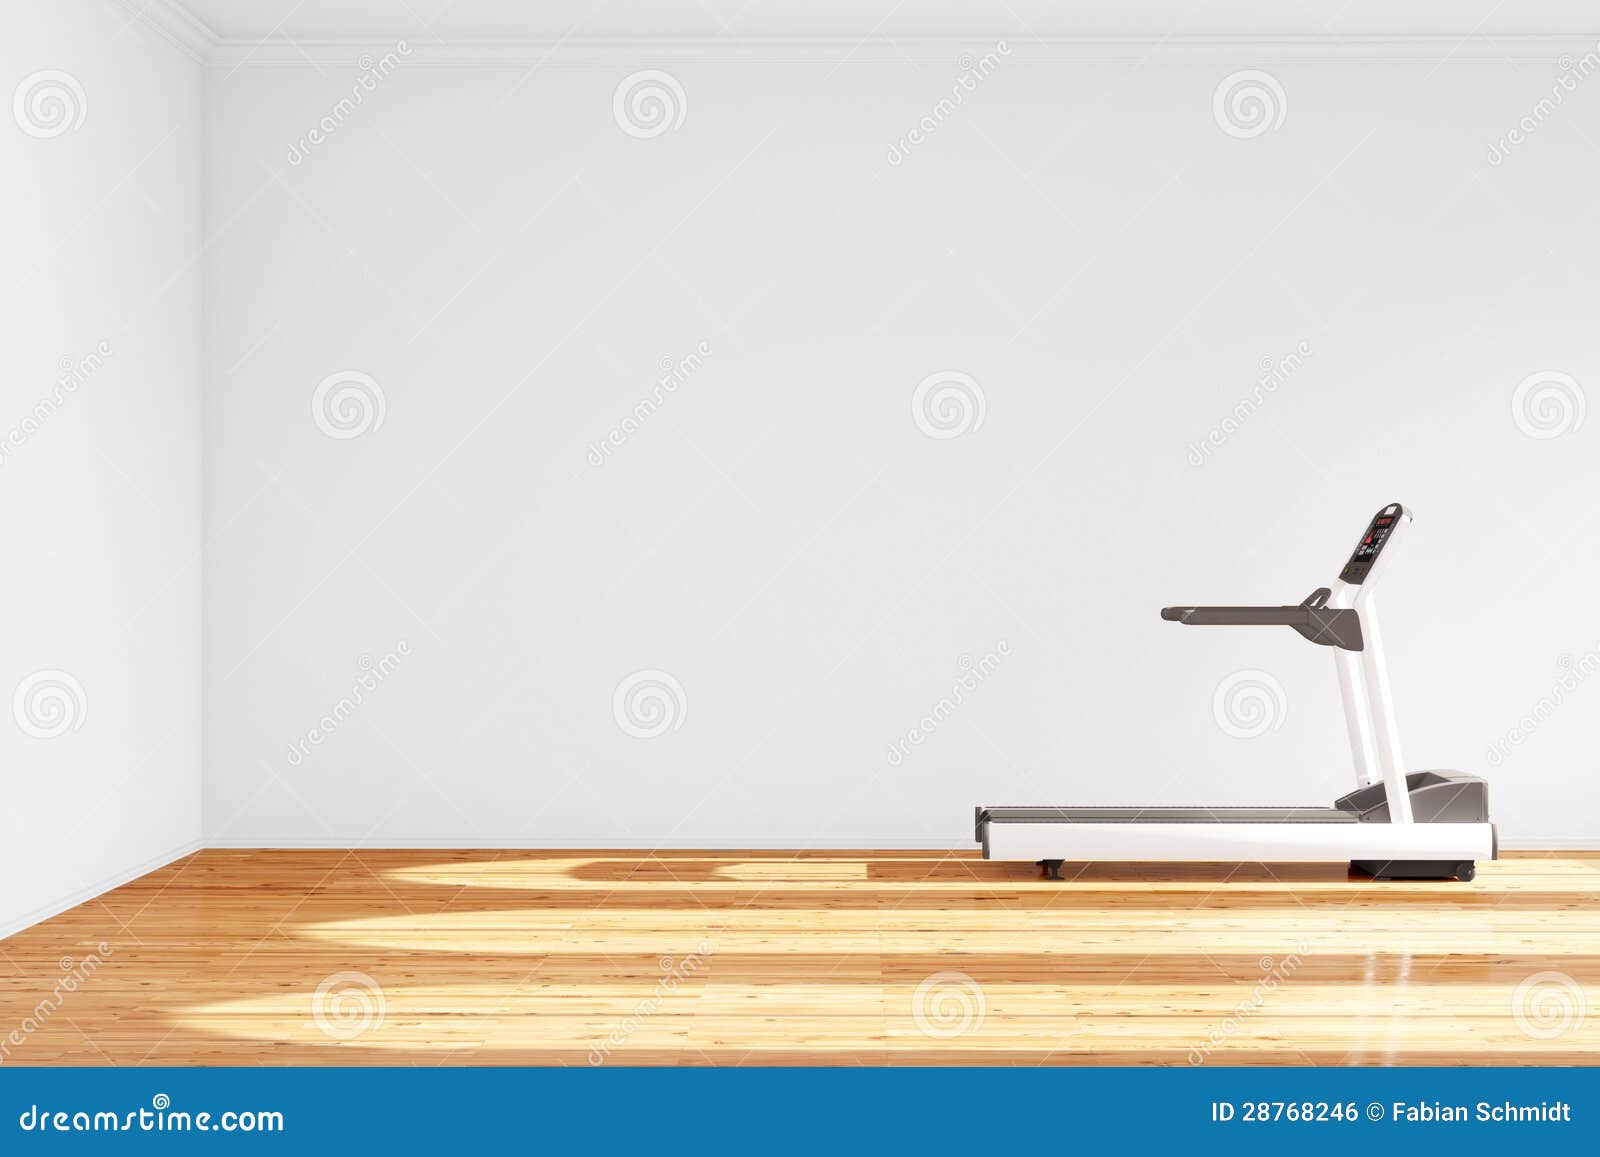 Treadmill In Empty Room Stock Illustration Illustration Of